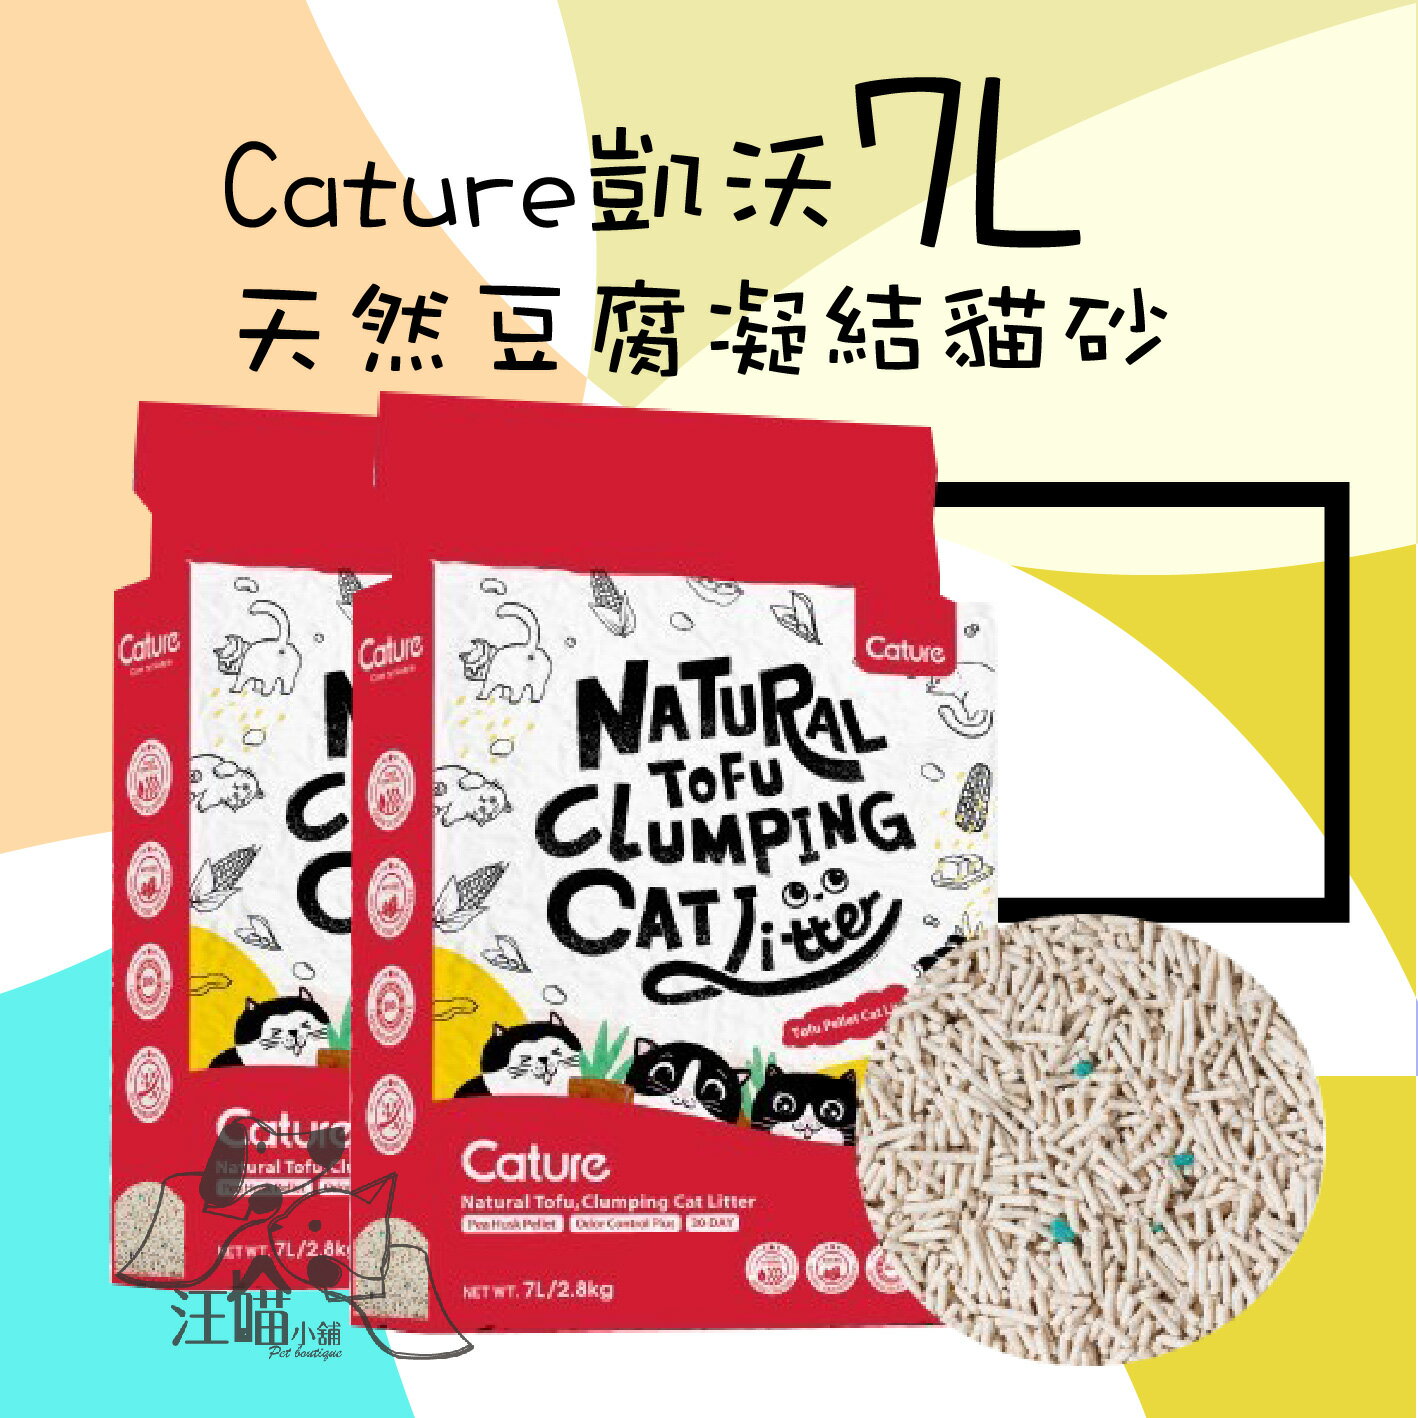 凱沃 Cature 天然豆腐凝結貓砂 7L(2.8kg)